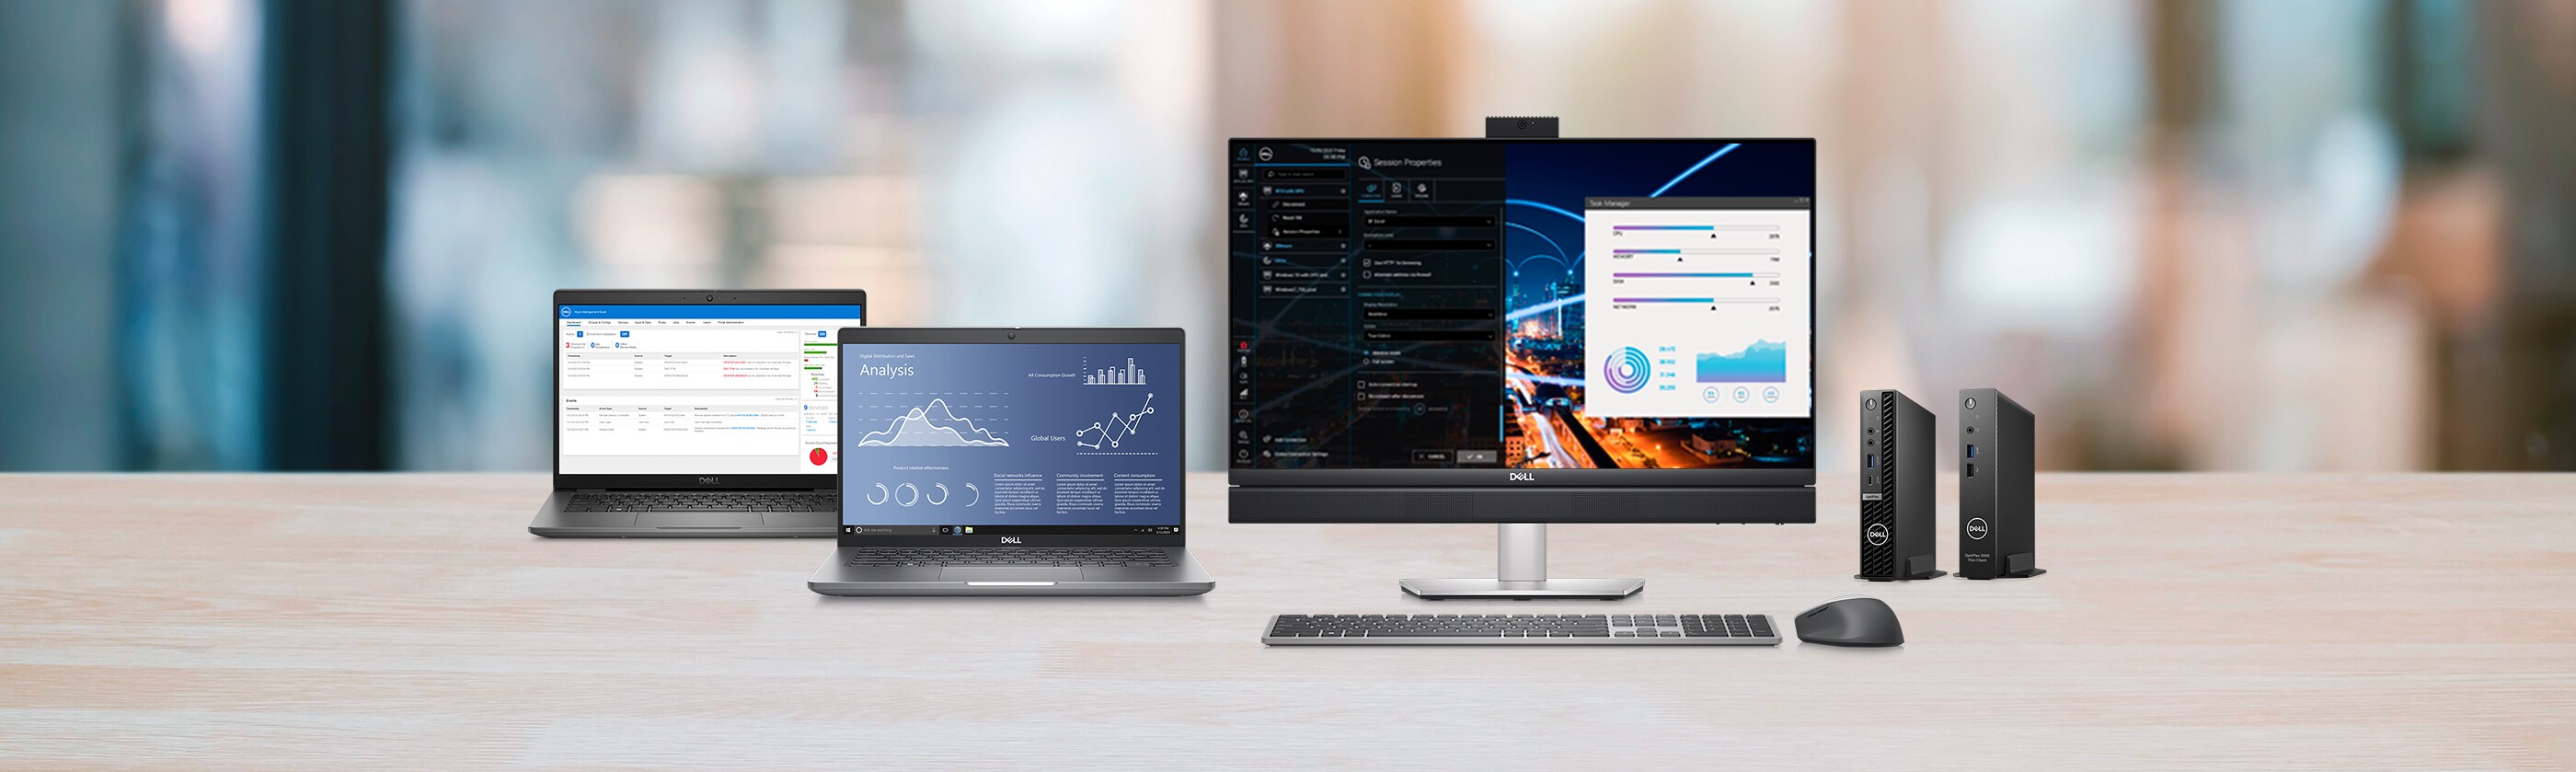 Windows® 10 IoT Enterprise: um software flexível otimizado pela Dell